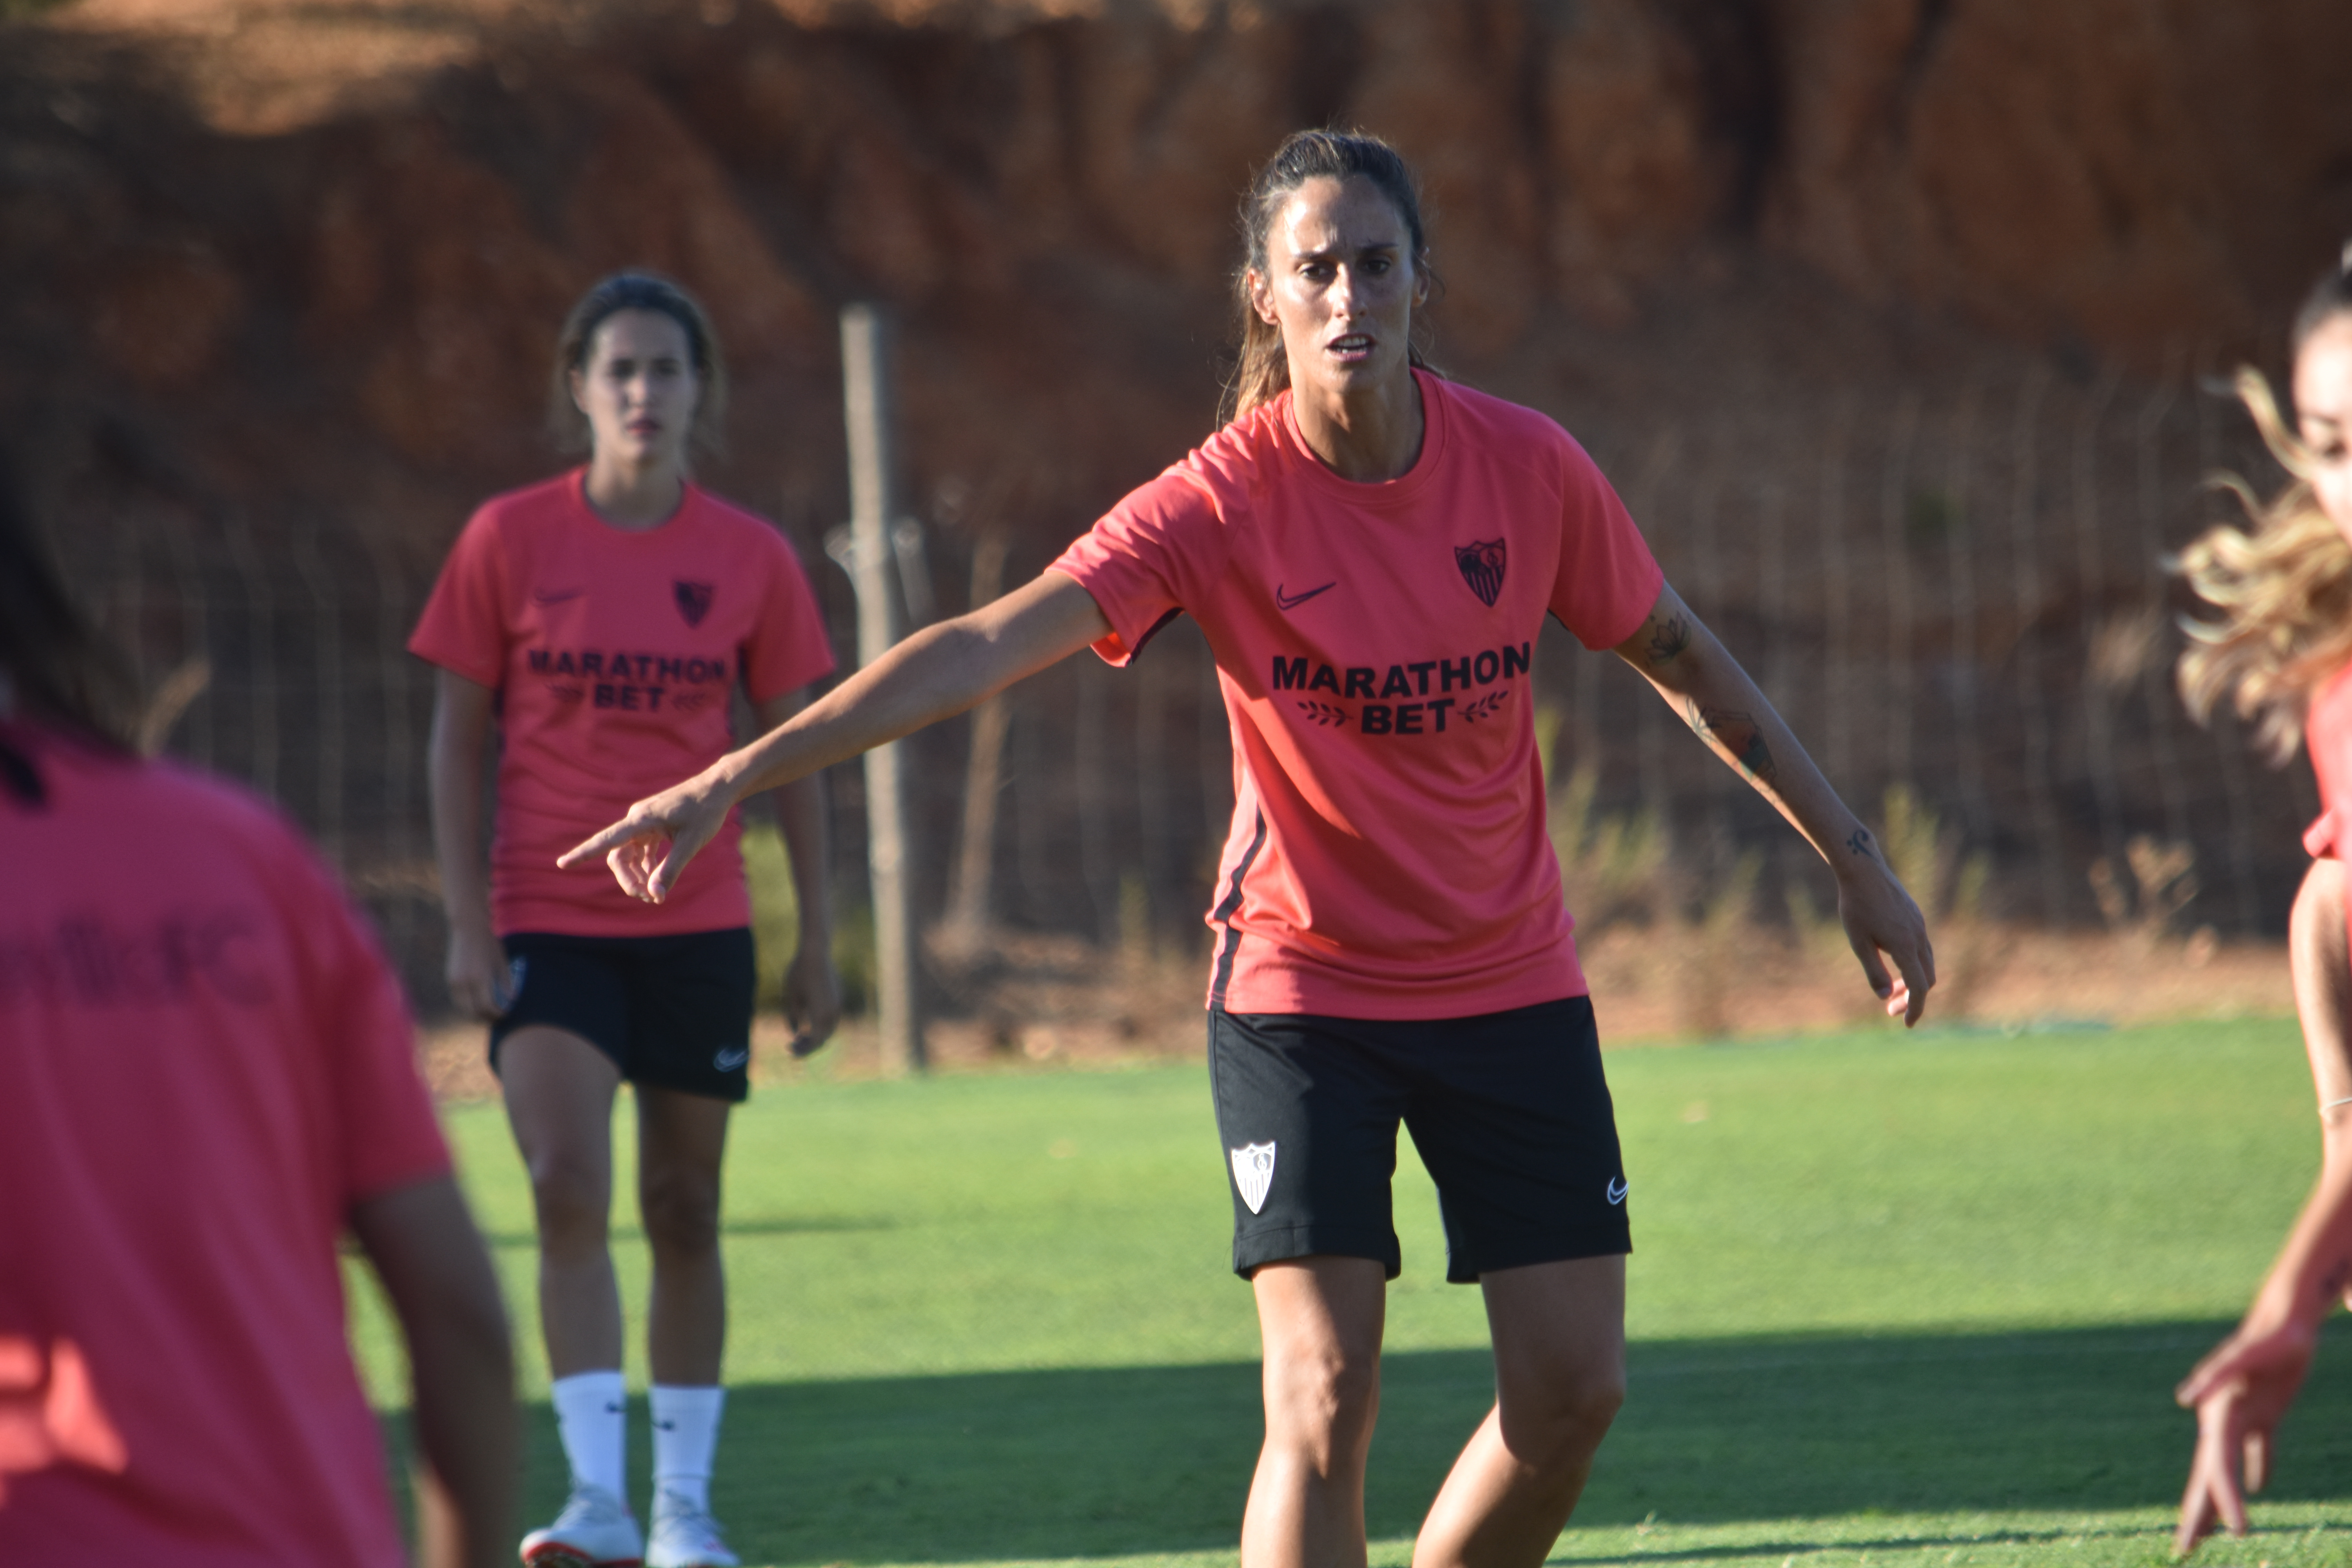 Maite Albarrán, jugadora del Sevilla FC Femenino